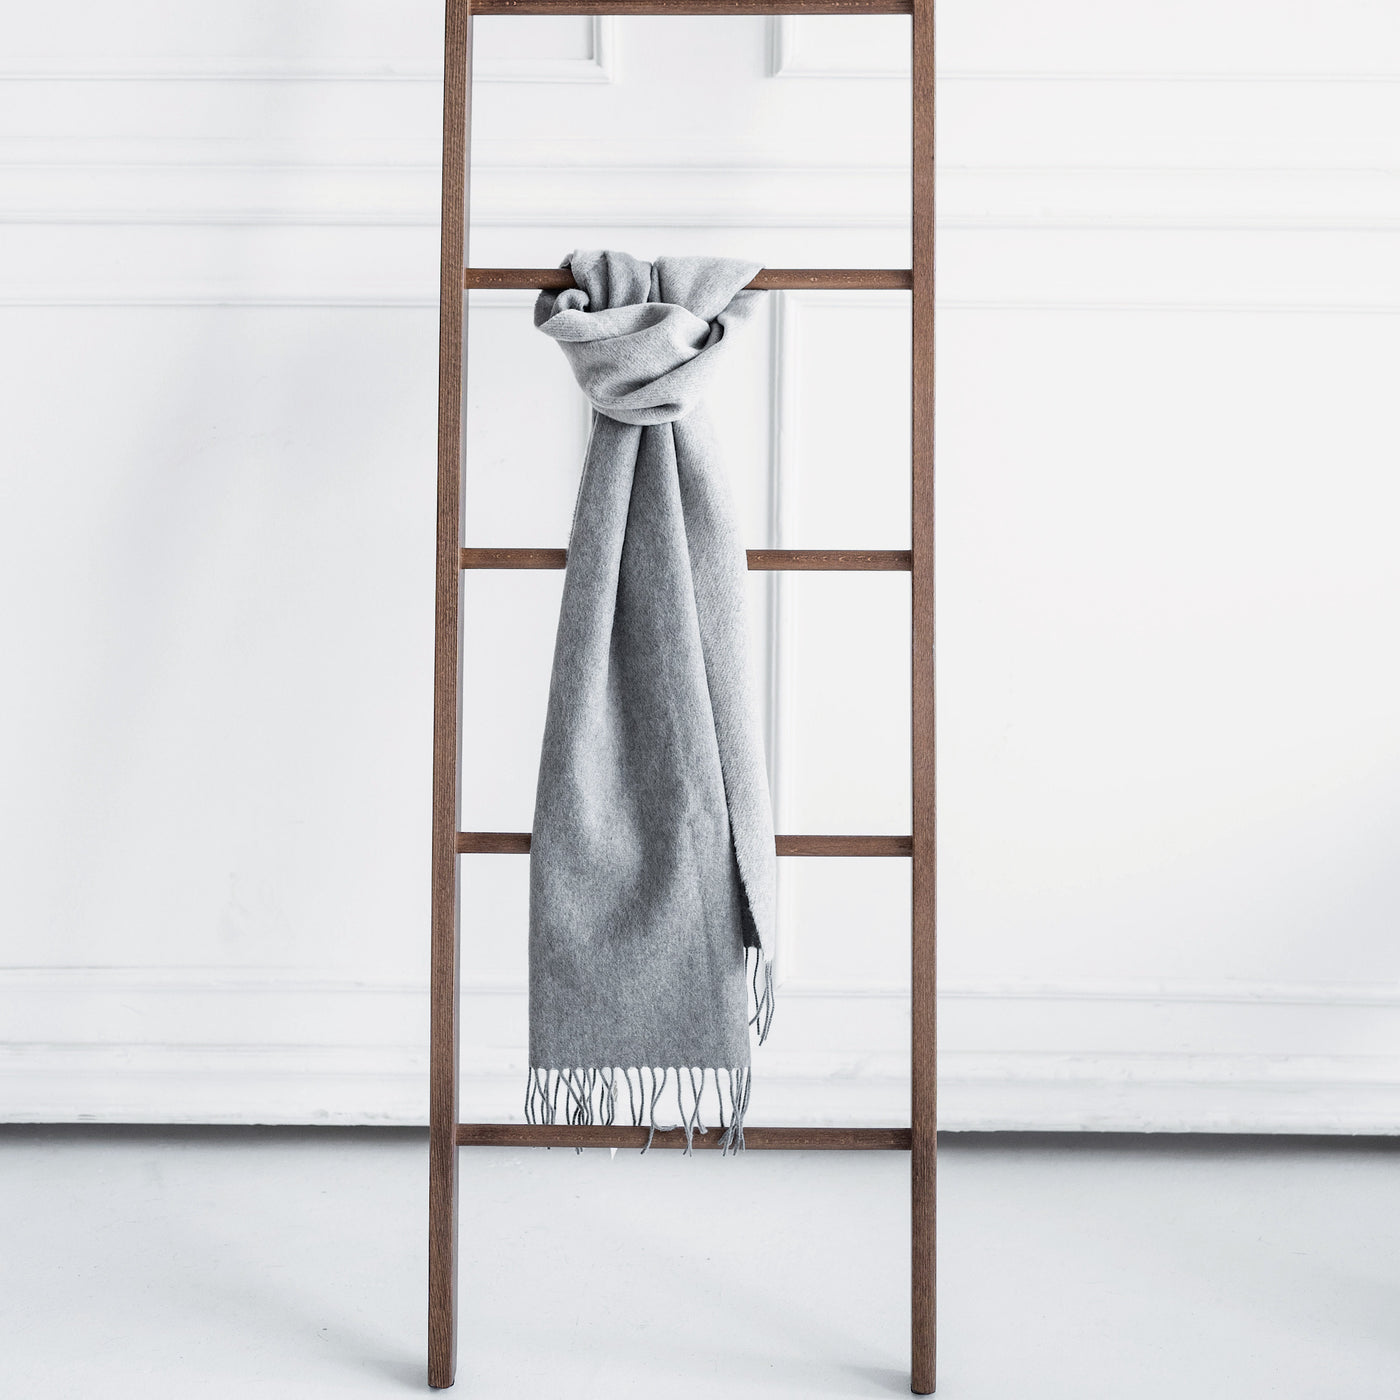 Produktbild mit grauem Kaschmir Schal and brauner Holzleiter angebunden. Im Hintergrund ist eine weiße Stuckwand zu sehen.